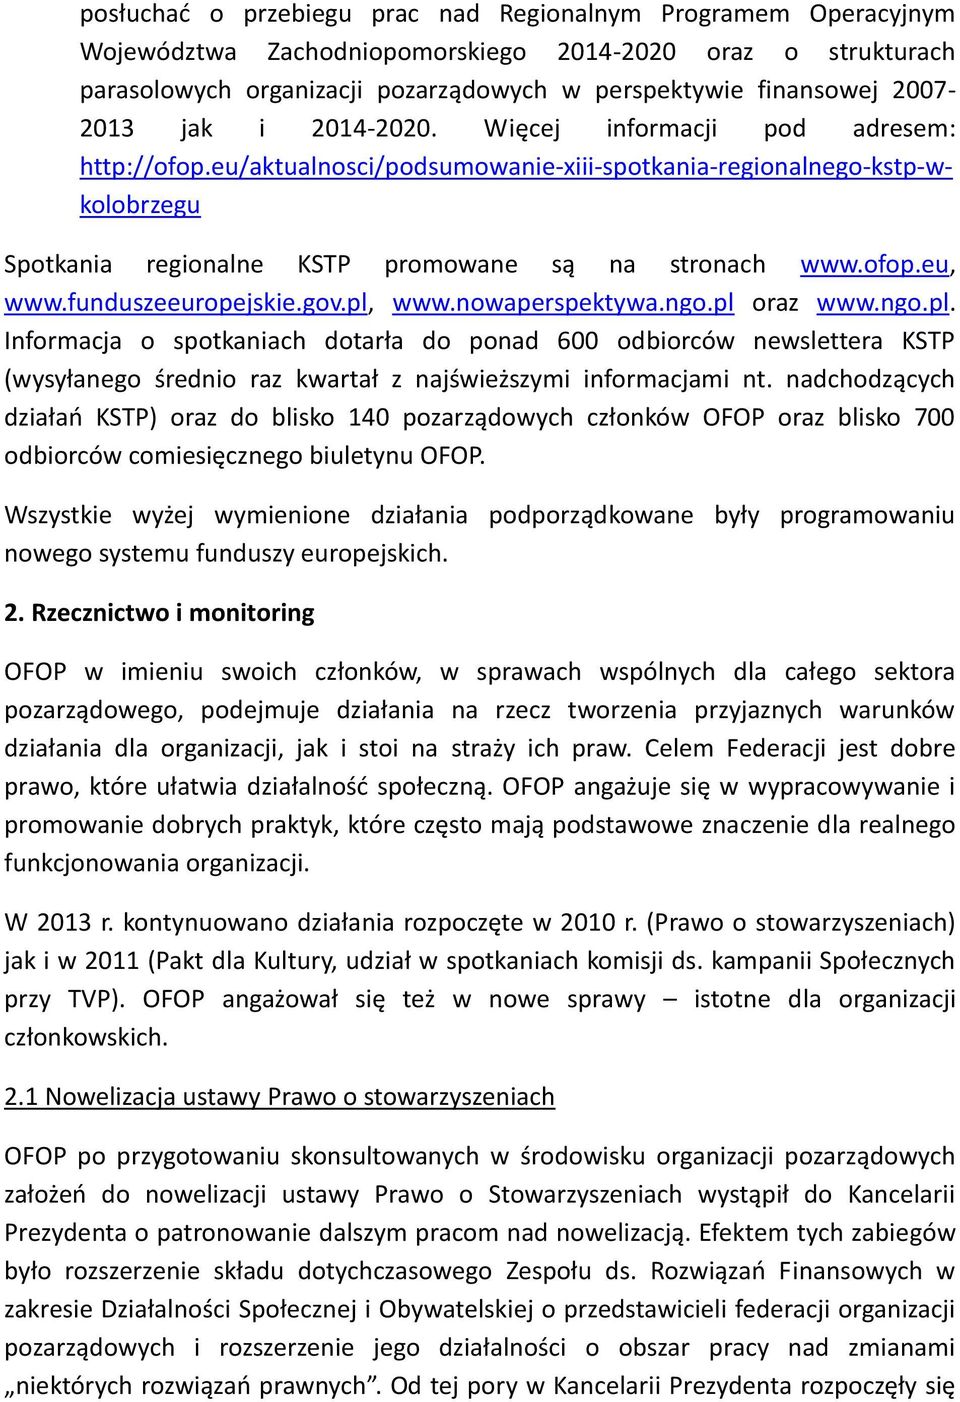 ofop.eu, www.funduszeeuropejskie.gov.pl, www.nowaperspektywa.ngo.pl oraz www.ngo.pl. Informacja o spotkaniach dotarła do ponad 600 odbiorców newslettera KSTP (wysyłanego średnio raz kwartał z najświeższymi informacjami nt.